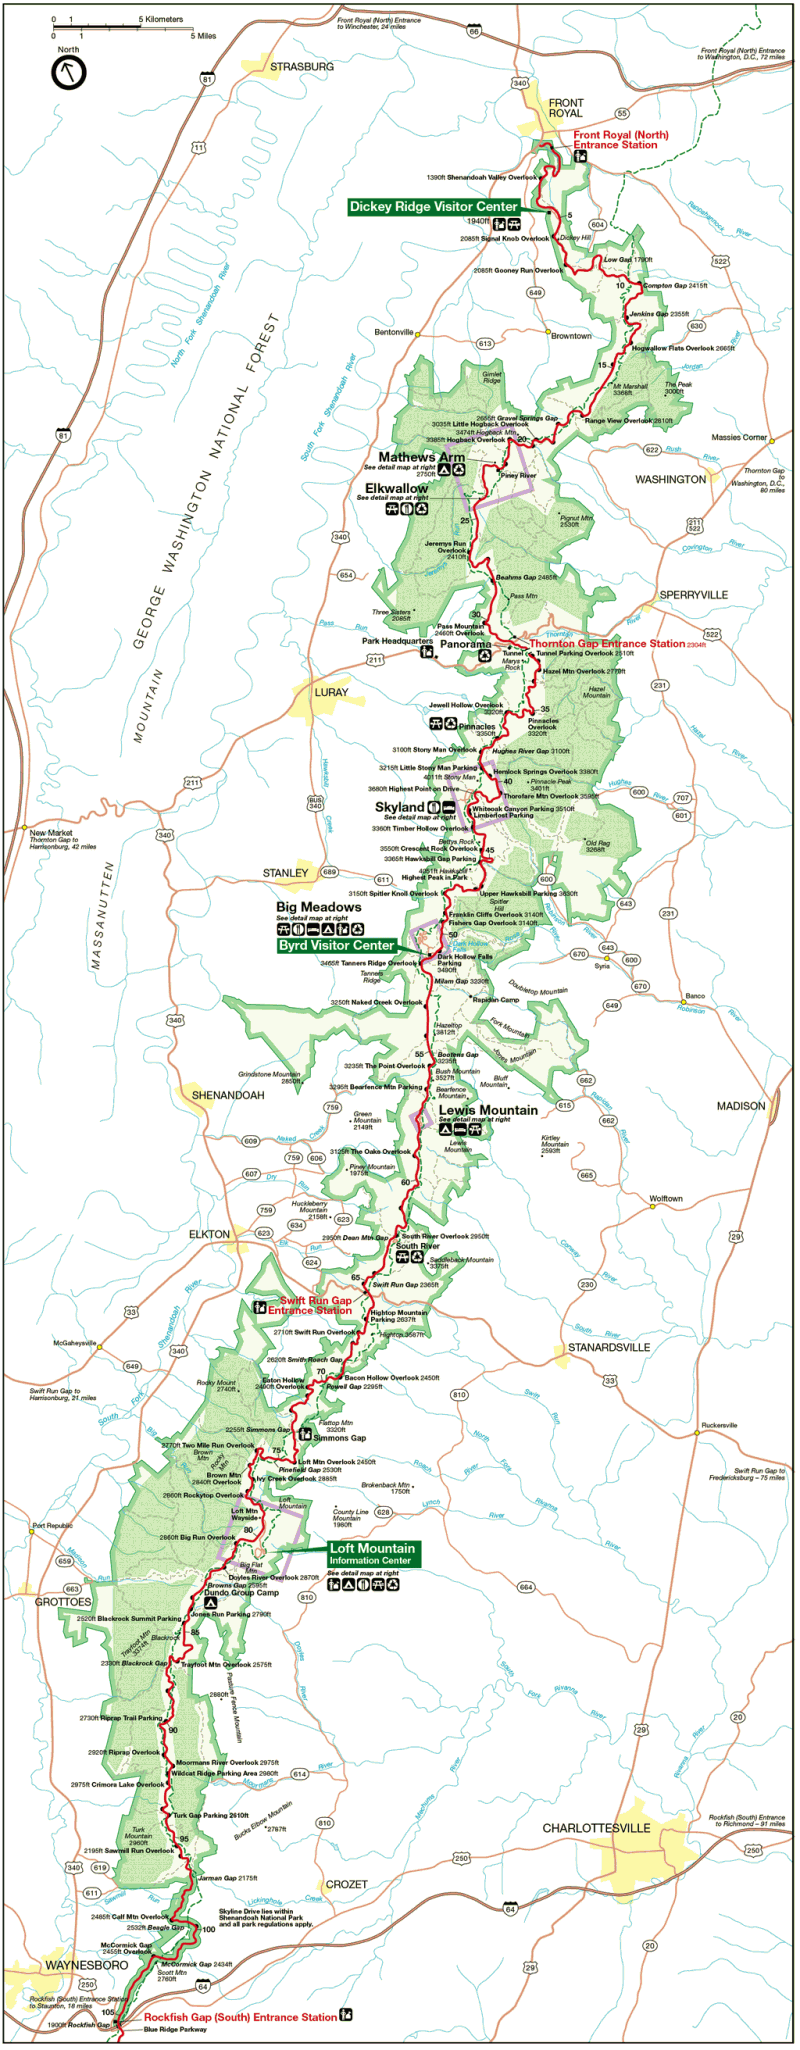 Детальная карта парка Шенандоа